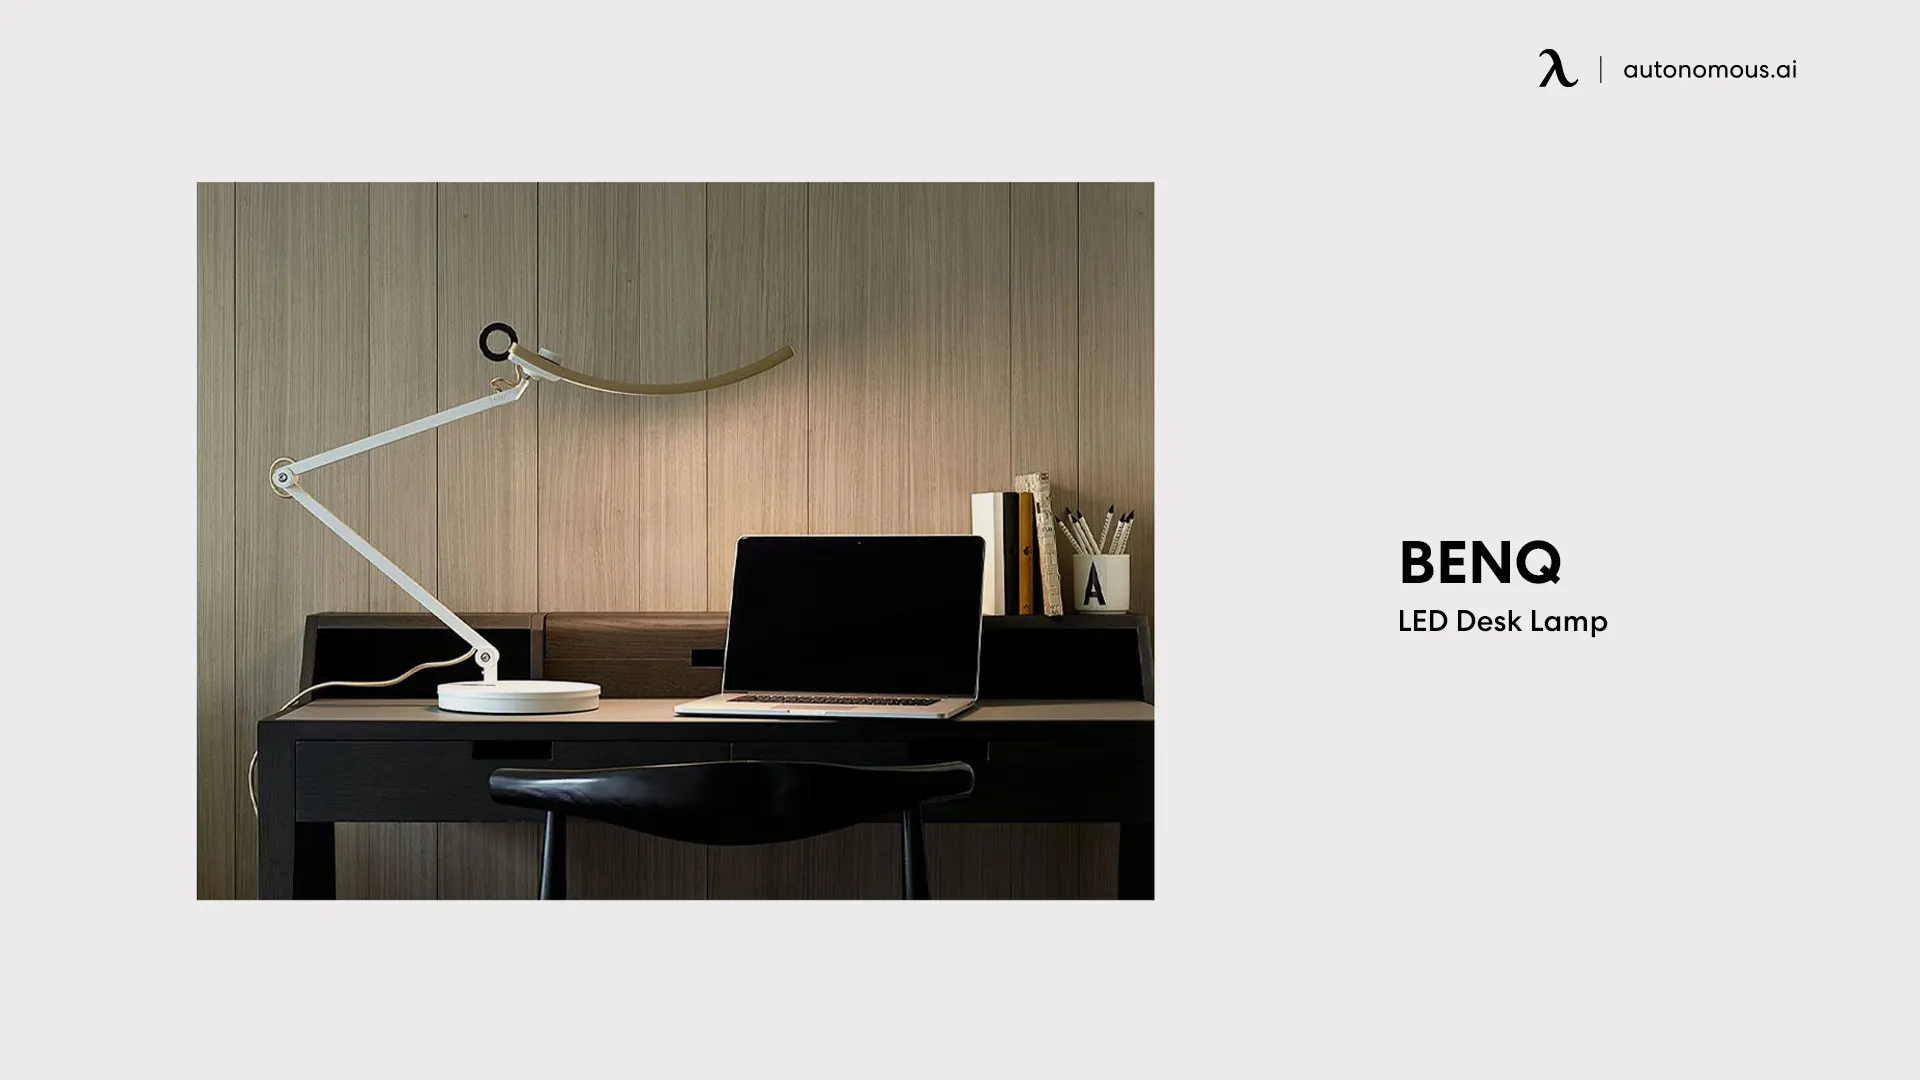 BenQ LED Desk Lamp